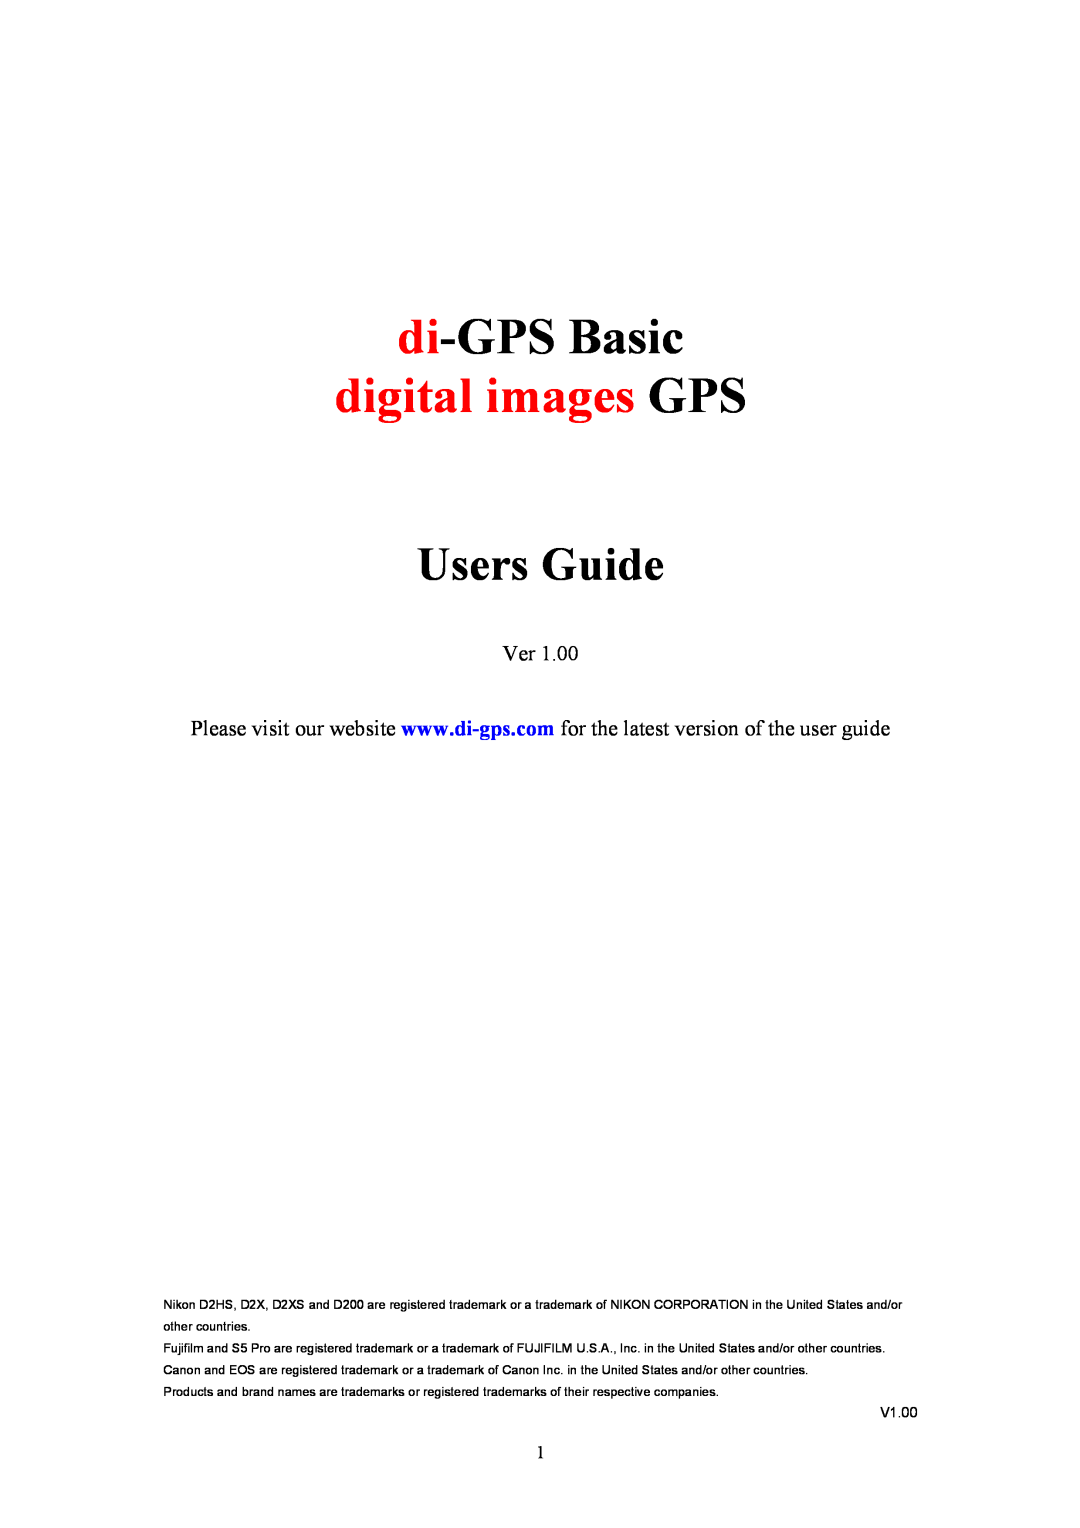 Nikon ver1.00 manual di-GPS Basic, digital images GPS, Users Guide, V1.00 